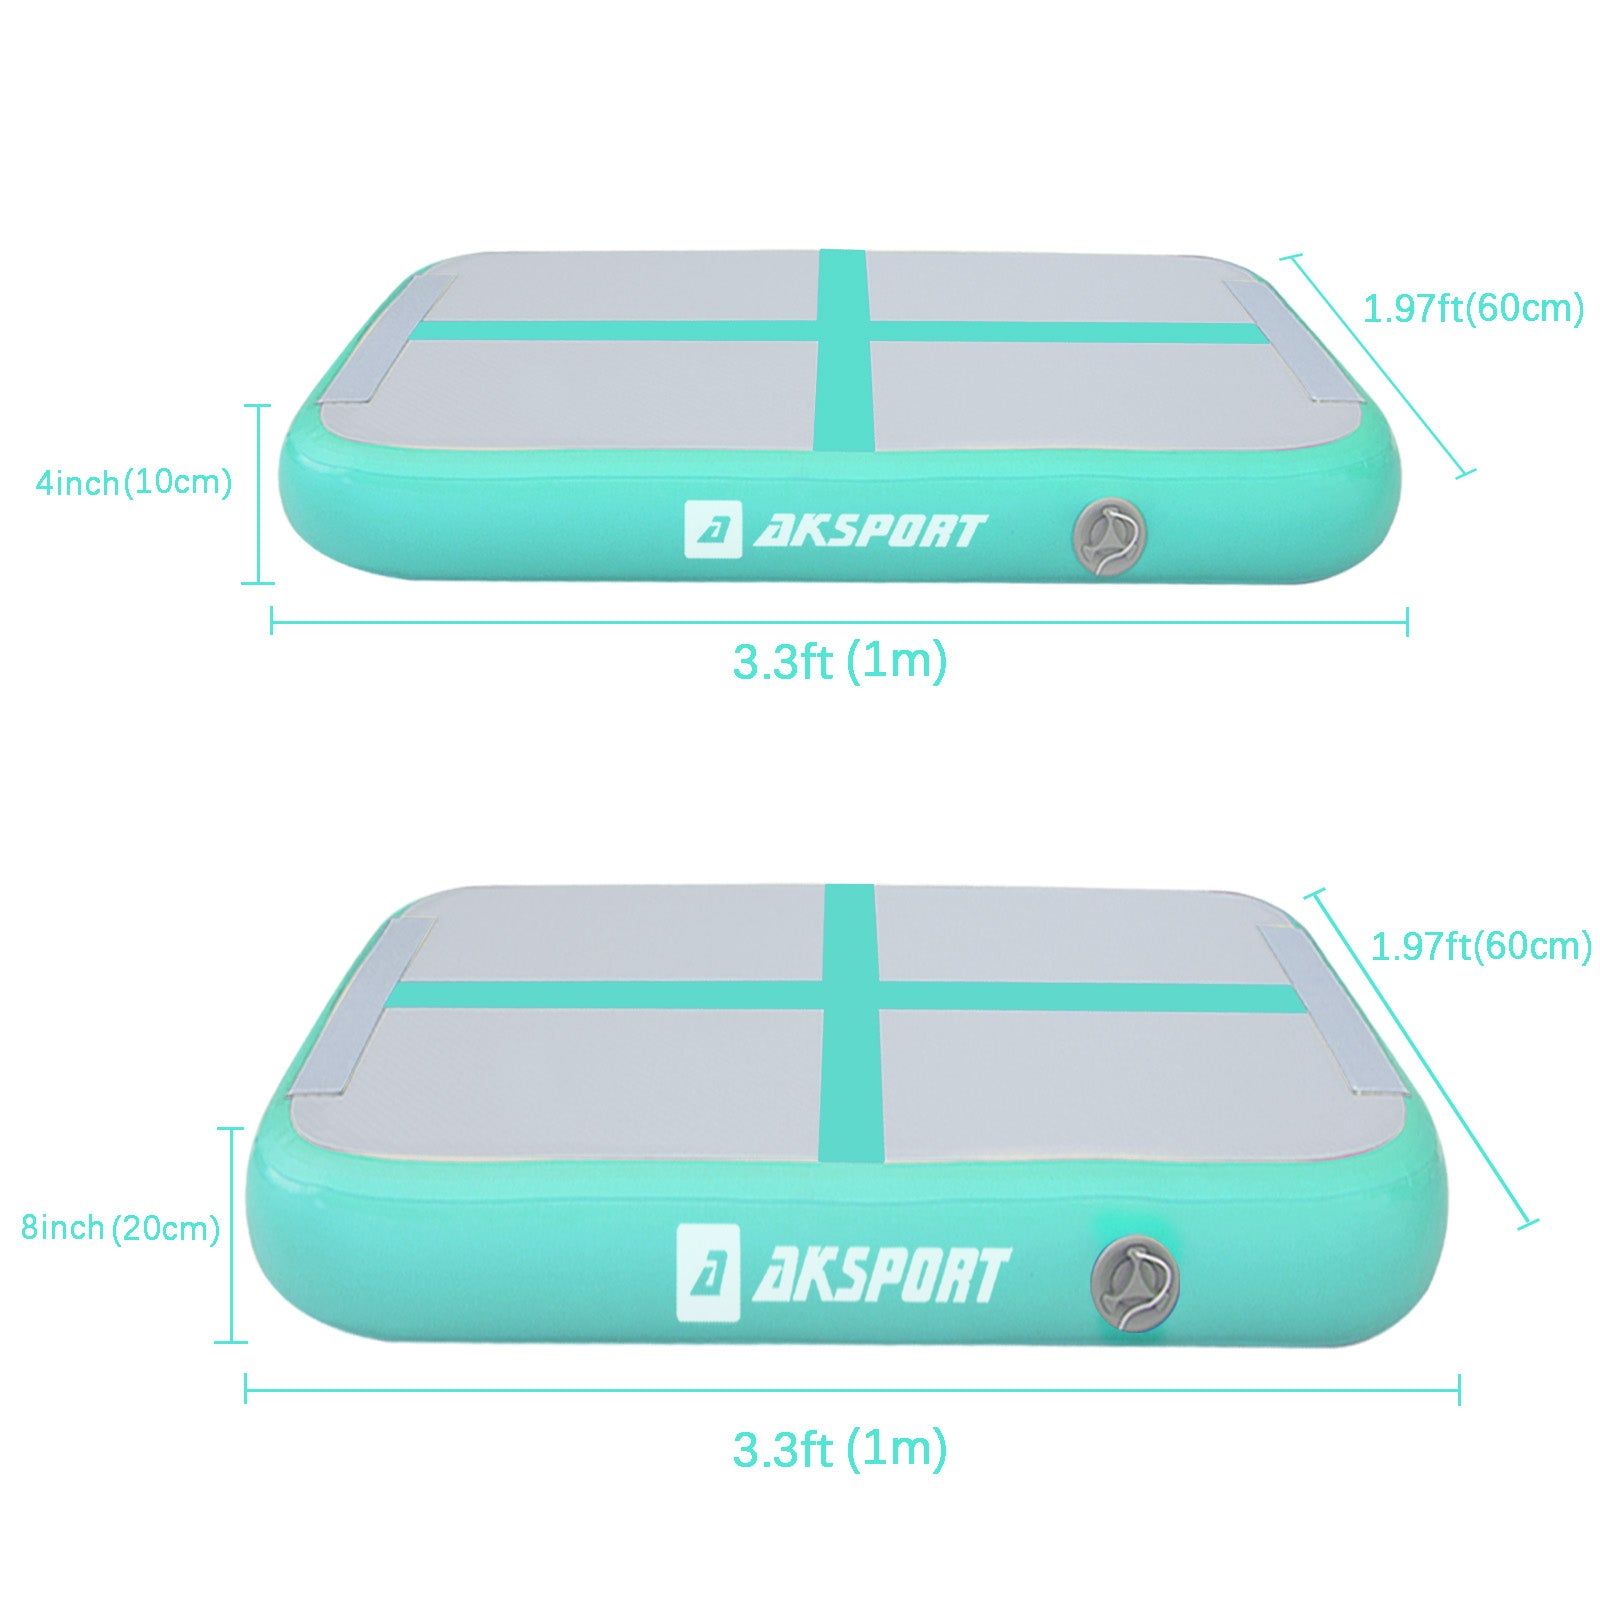 AKSPORT AirBoard/AirBlock Springboard-Mint Green - AKSPORT